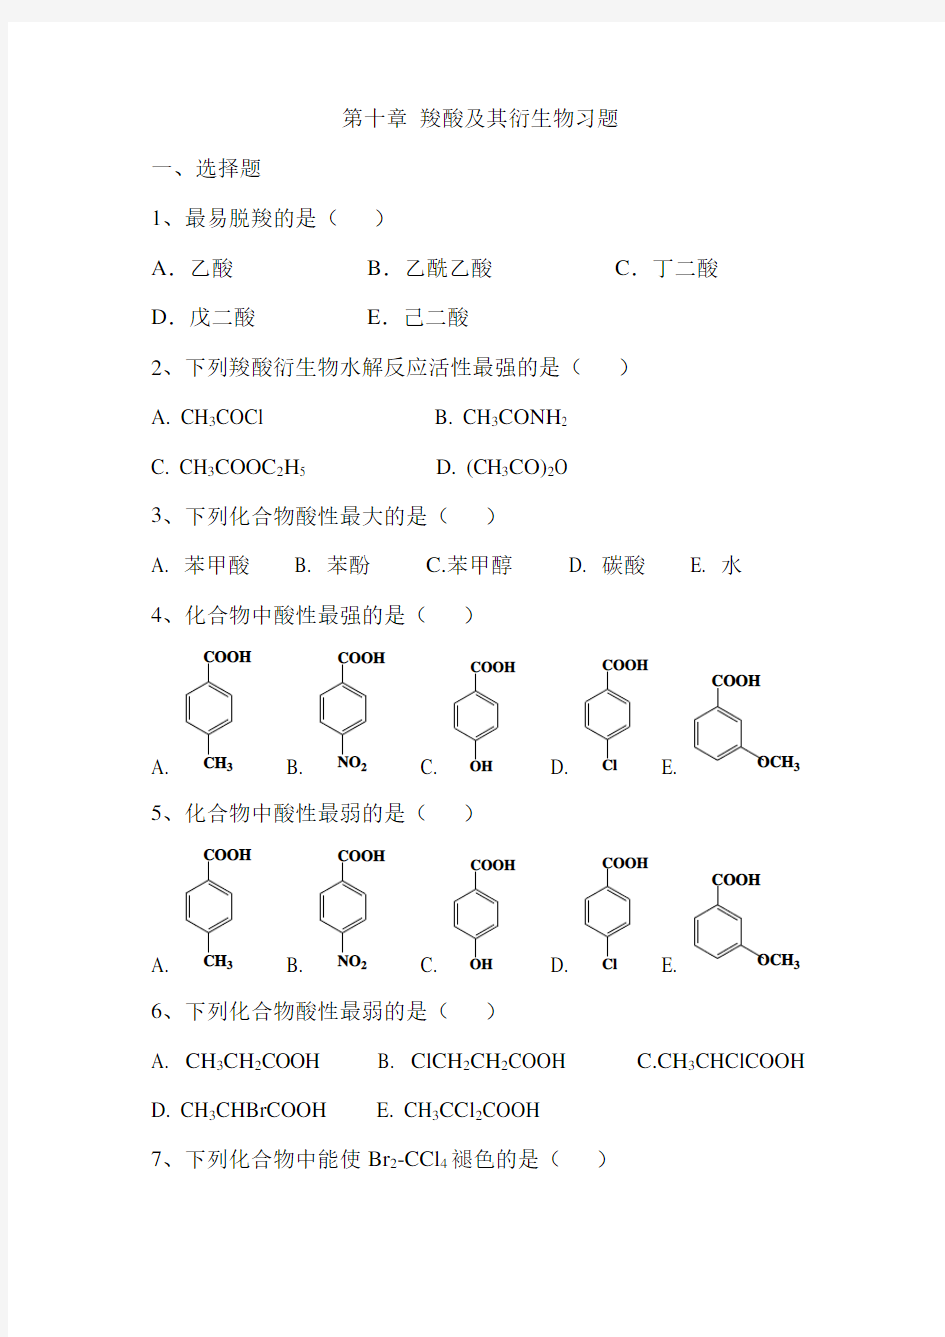 羧酸及其衍生物习题